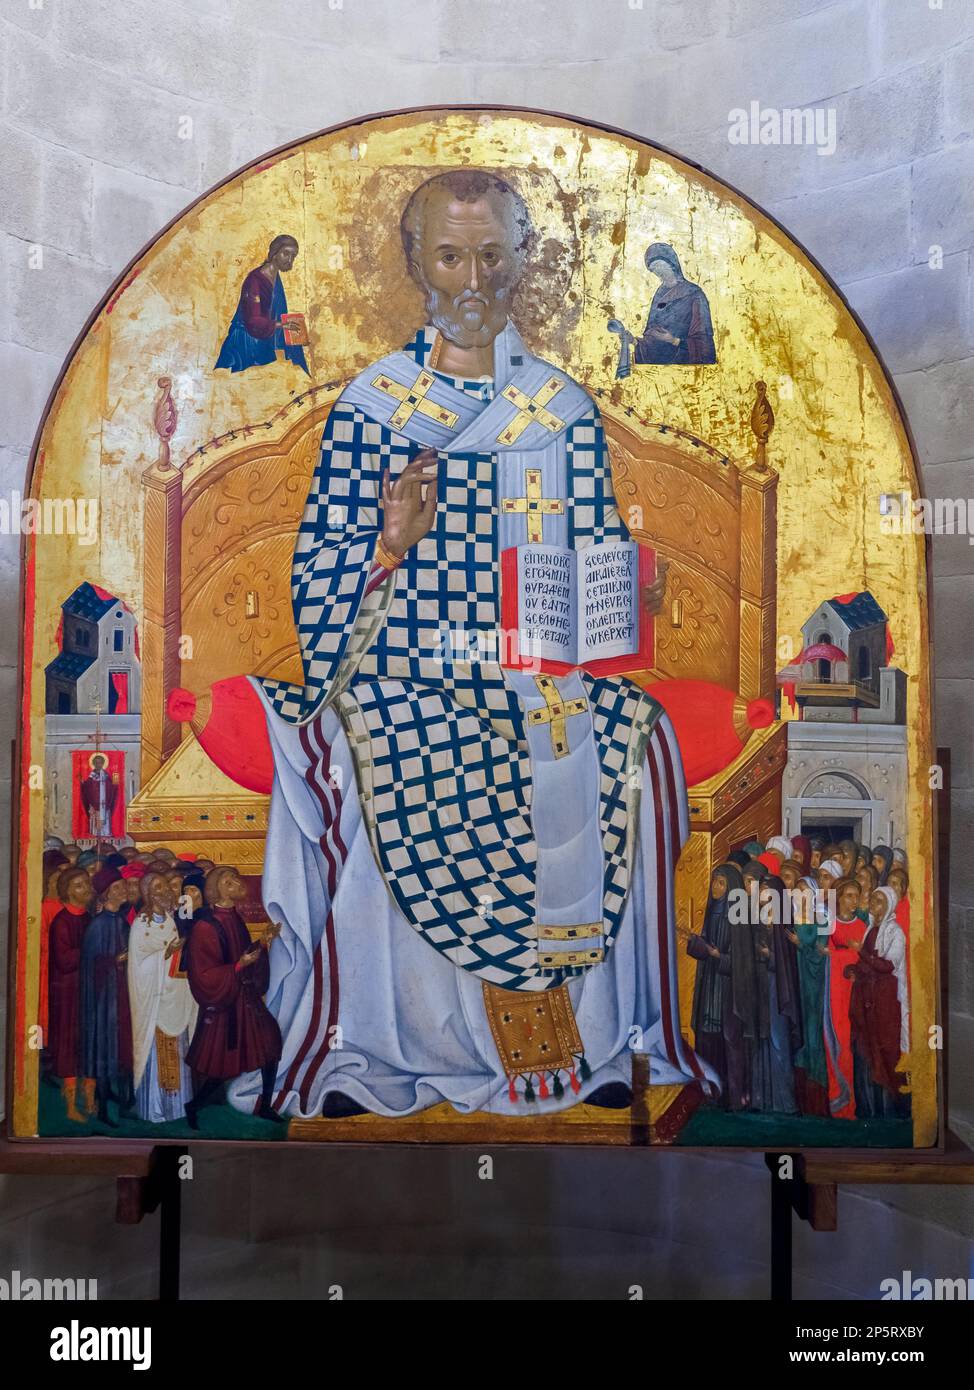 Grande icône avec St. Nicholas Enthroned, école crétoise-albanaise du 15th siècle, situé dans l'abside droite (Diaconicon) - Eglise de Santa Maria dell'Ammiraglio - Palerme, Sicile, Italie Banque D'Images